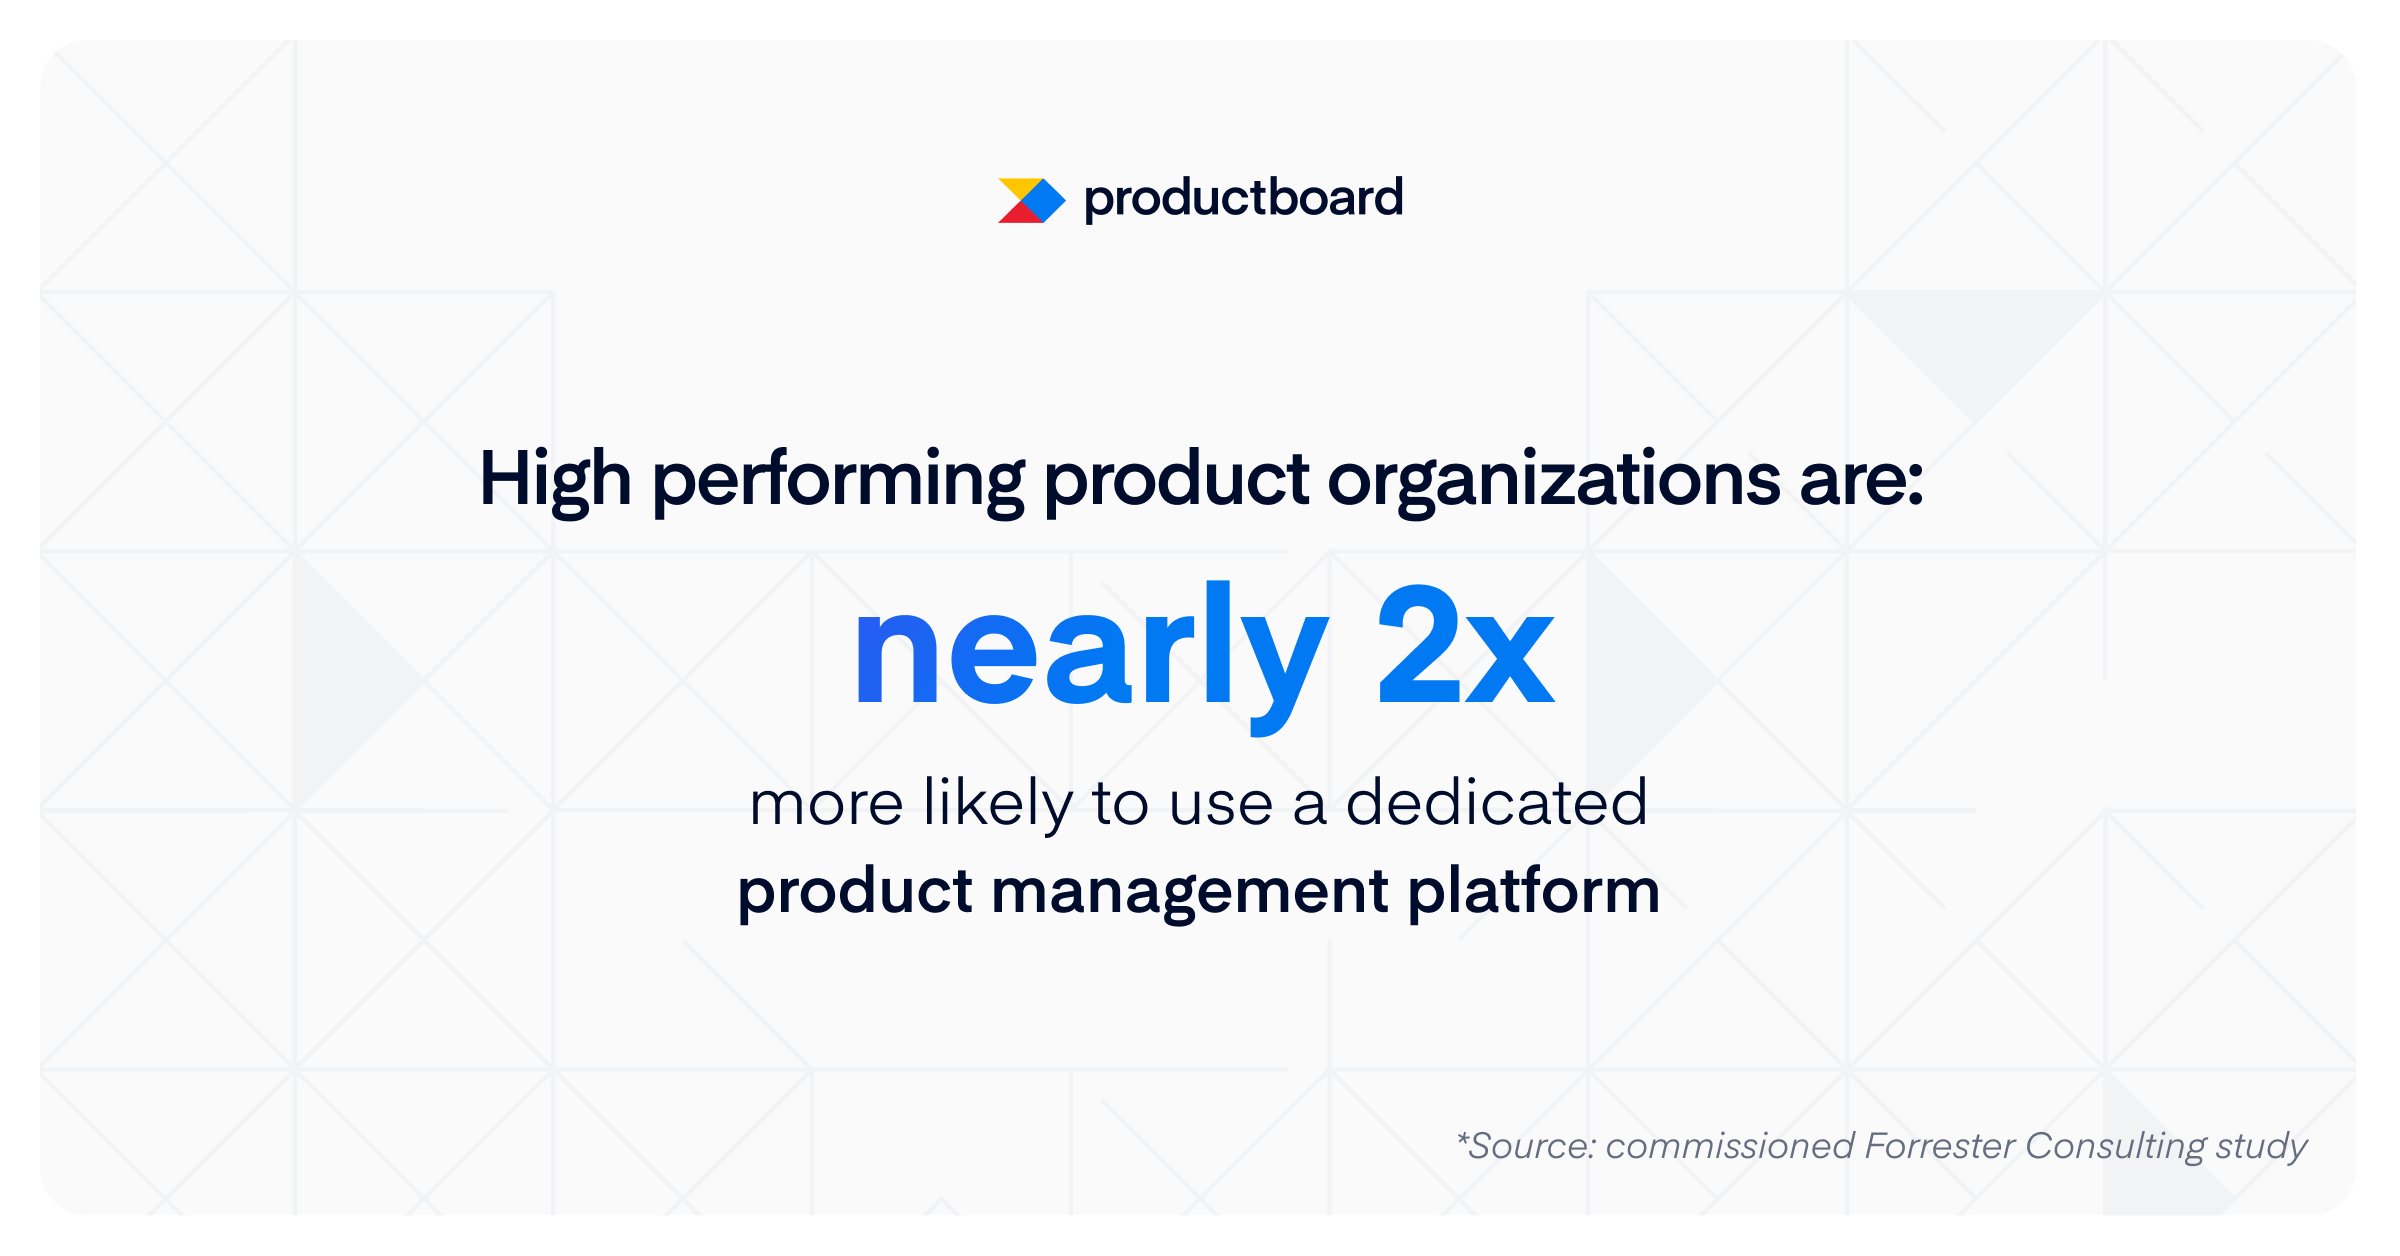 성과가 높은 제품 조직은 전용 제품 관리 플랫폼을 사용할 가능성이 2배 더 높습니다.